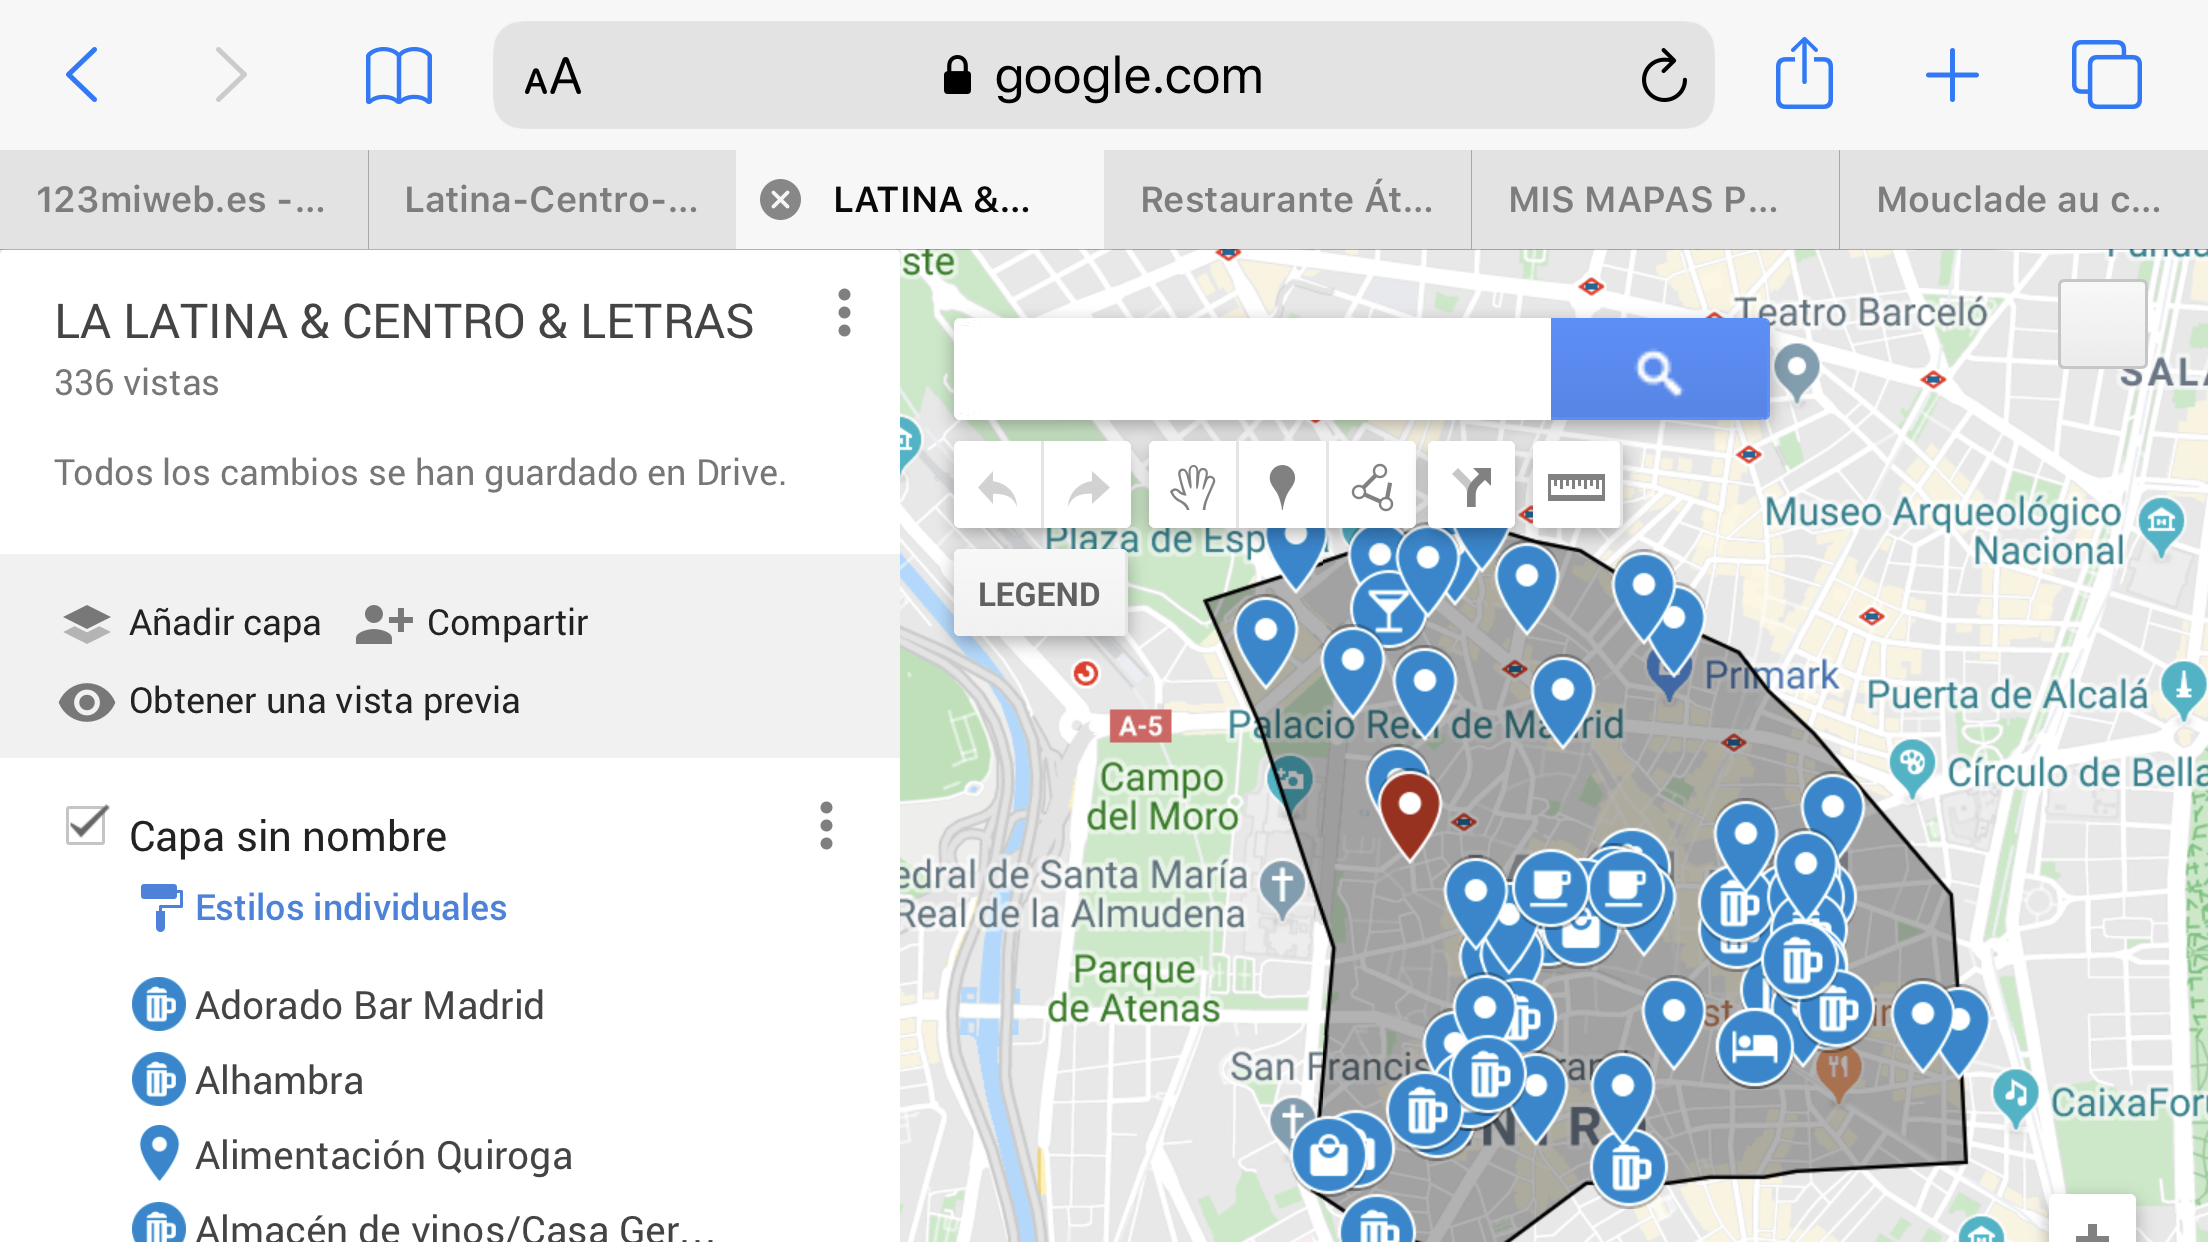 MIS MAPAS PROPIOS - Comunidad de Google Maps